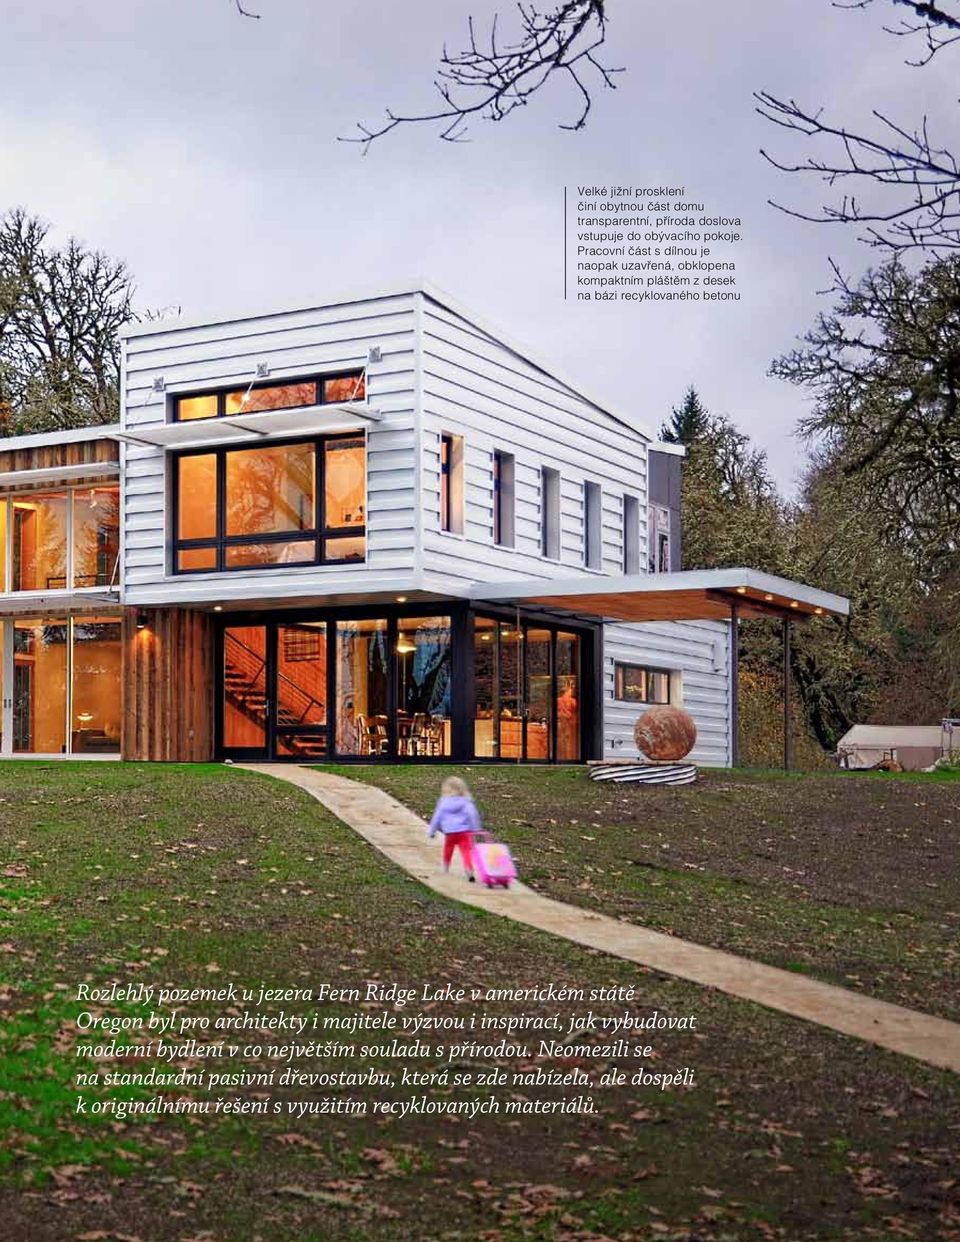 Fern Ridge Lake v americkém státě Oregon byl pro architekty i majitele výzvou i inspirací, jak vybudovat moderní bydlení v co